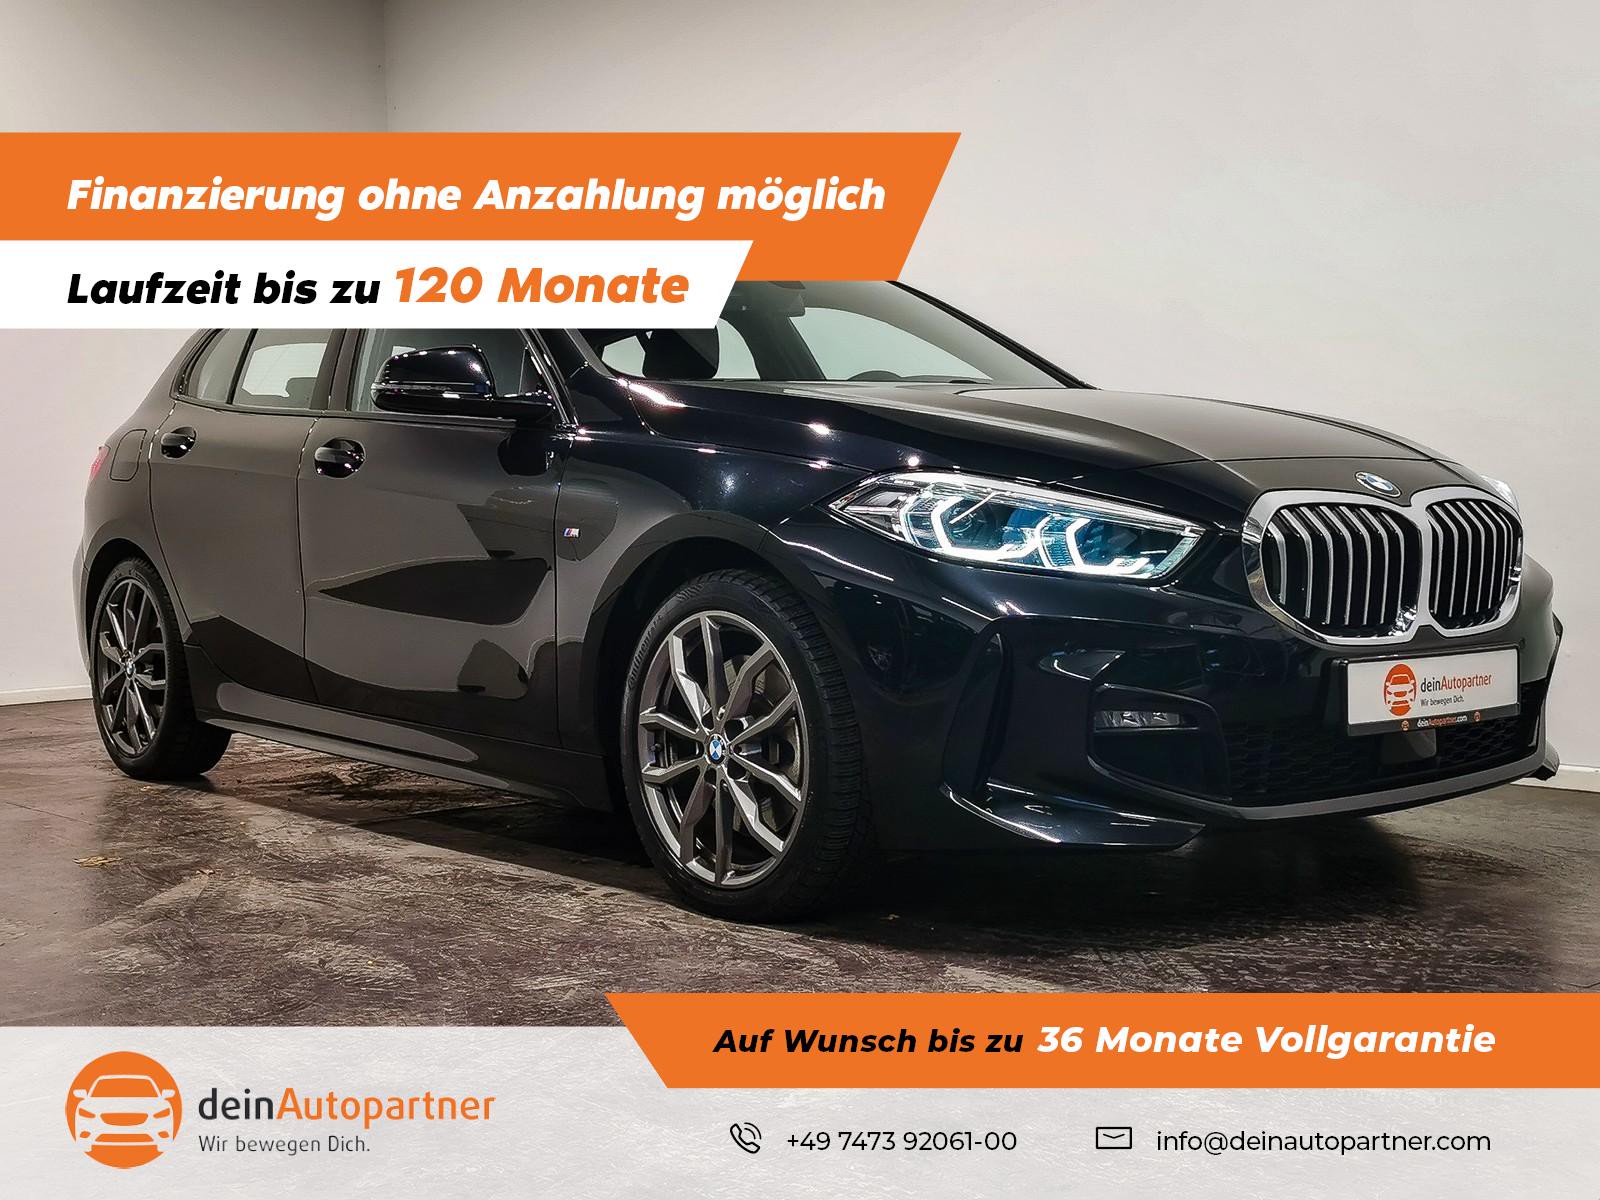 BMW 120 i M Sport gebraucht kaufen in Mössingen Preis 27900 eur - Int.Nr.:  J07412